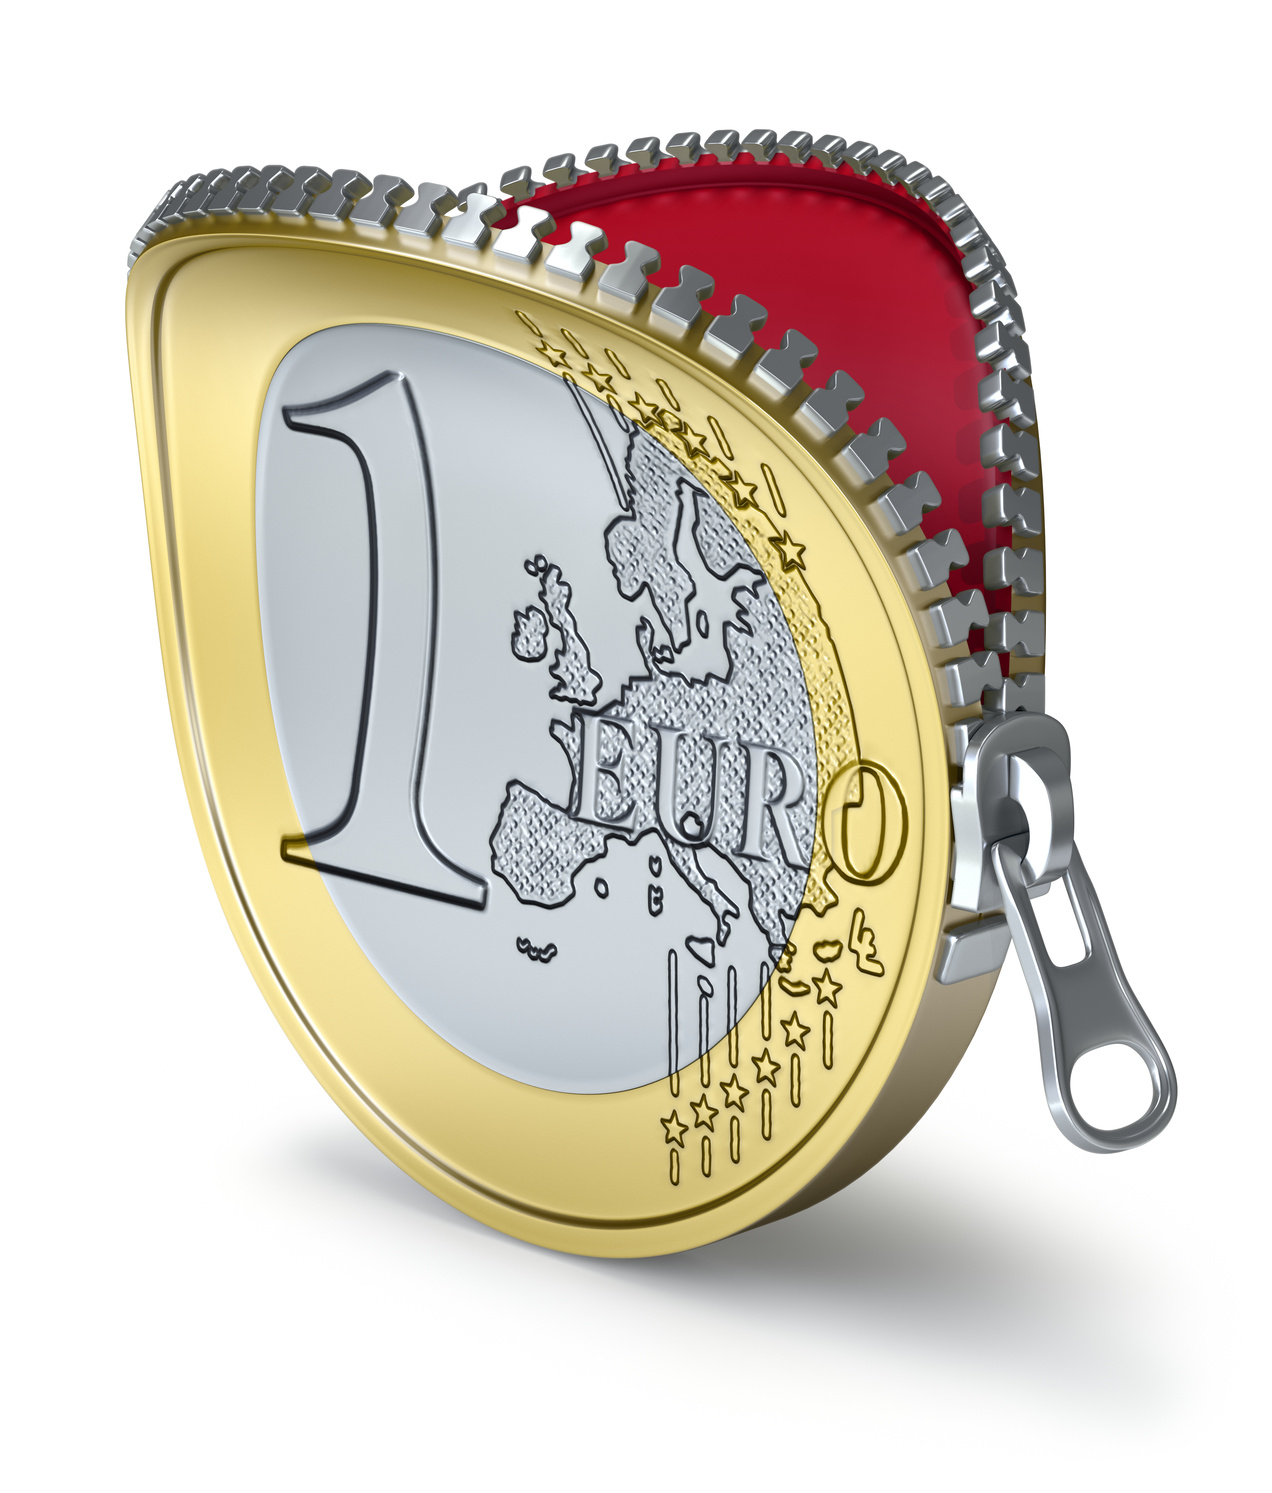 Euro coin with zipper